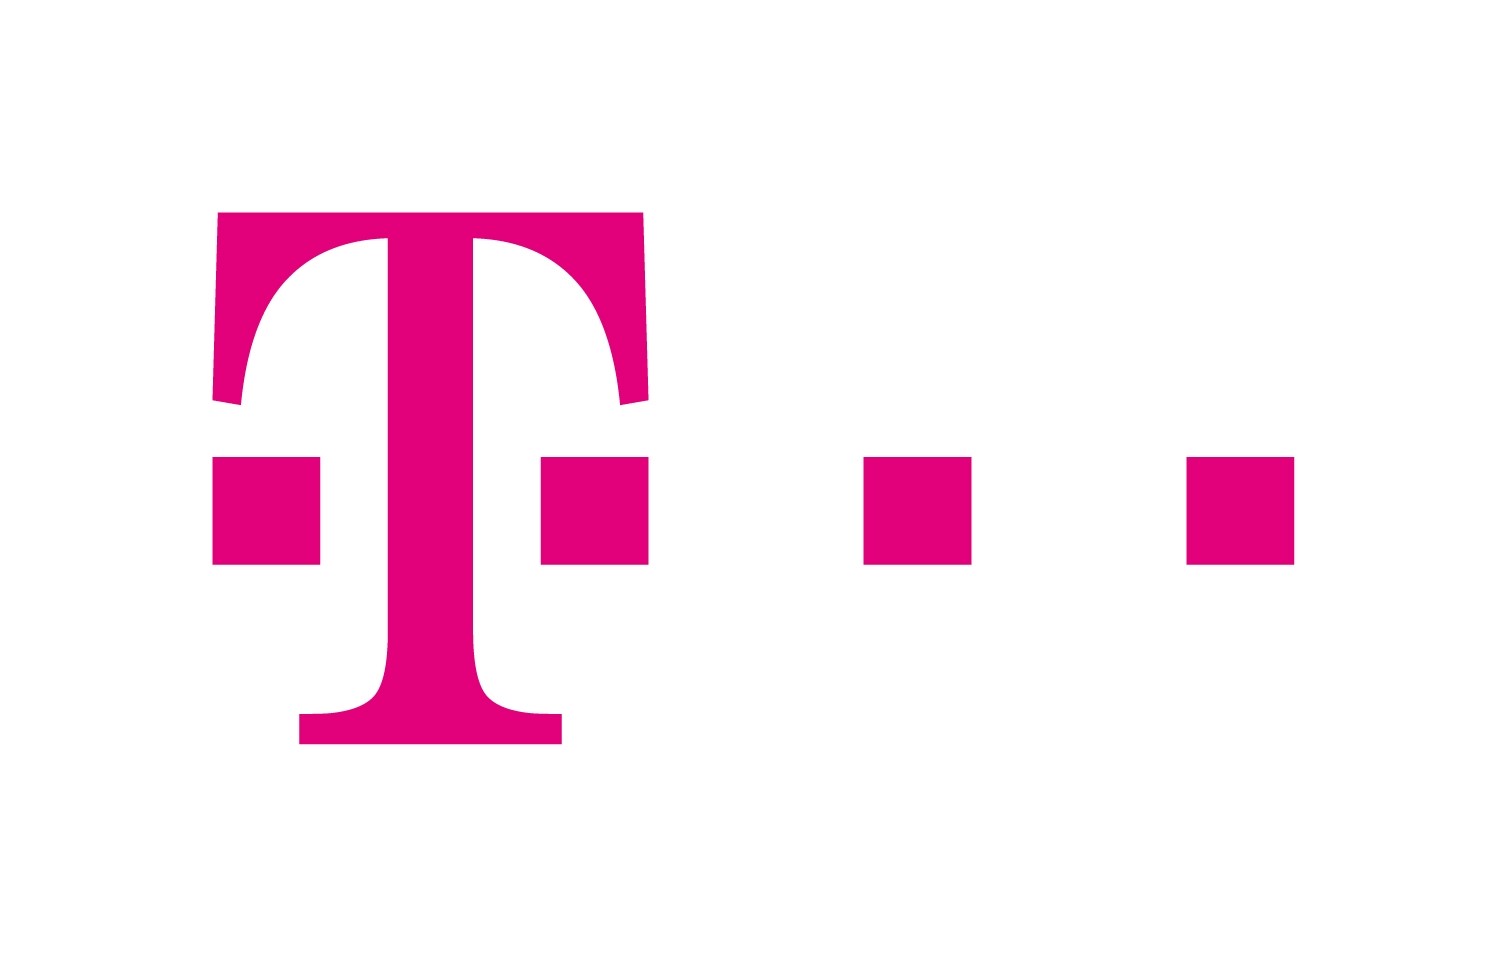 T (Deutsche Telekom) Brand Logo